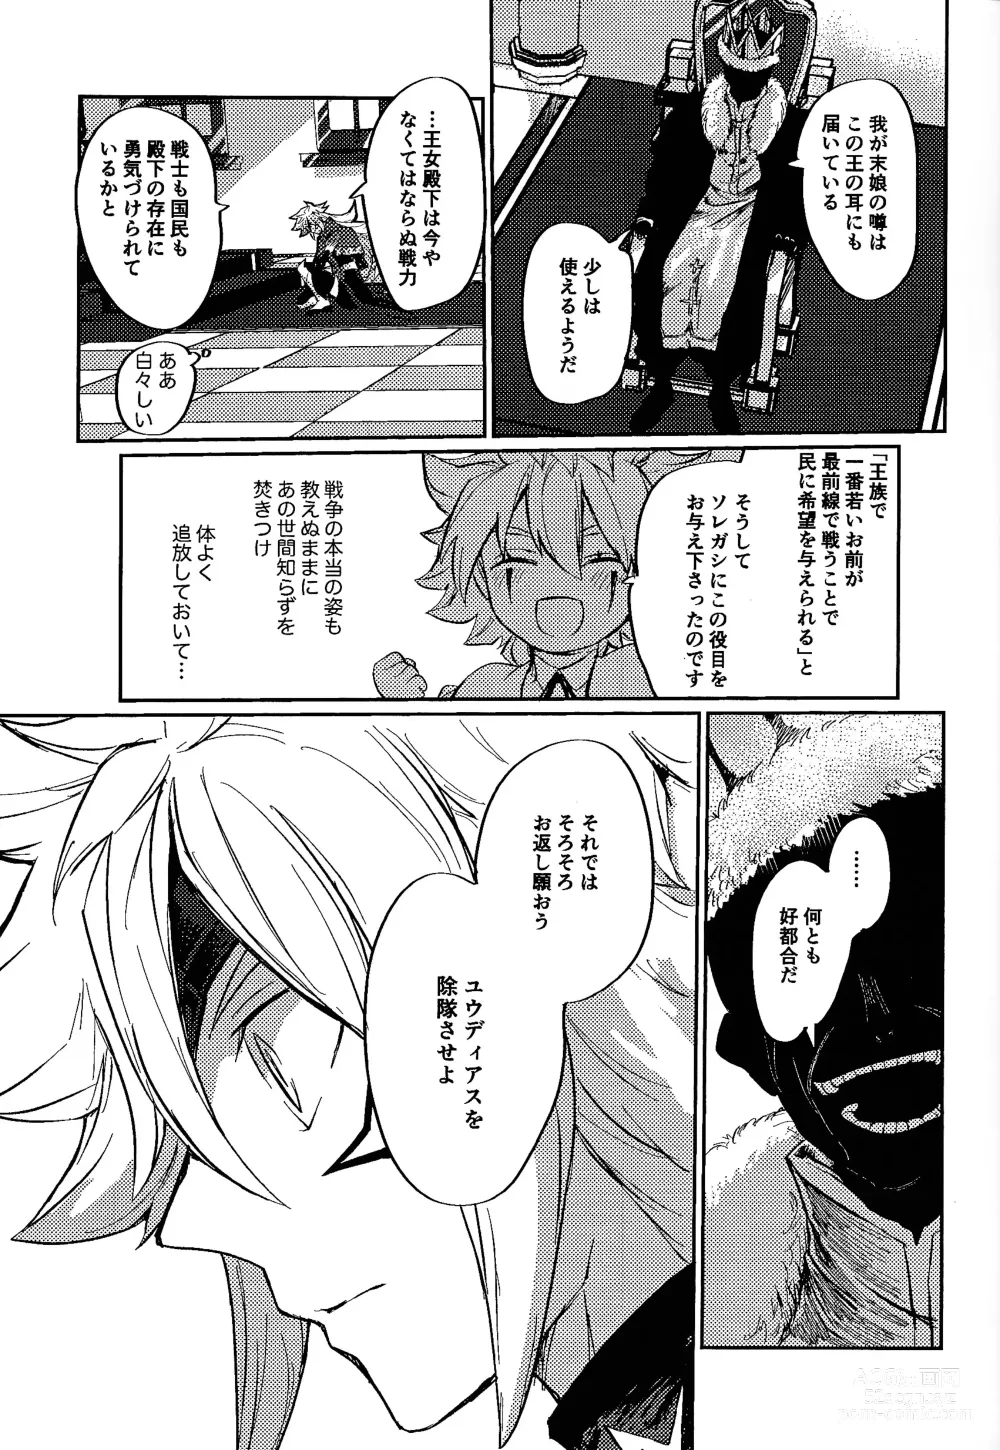 Page 23 of doujinshi Reimei ni sasagu